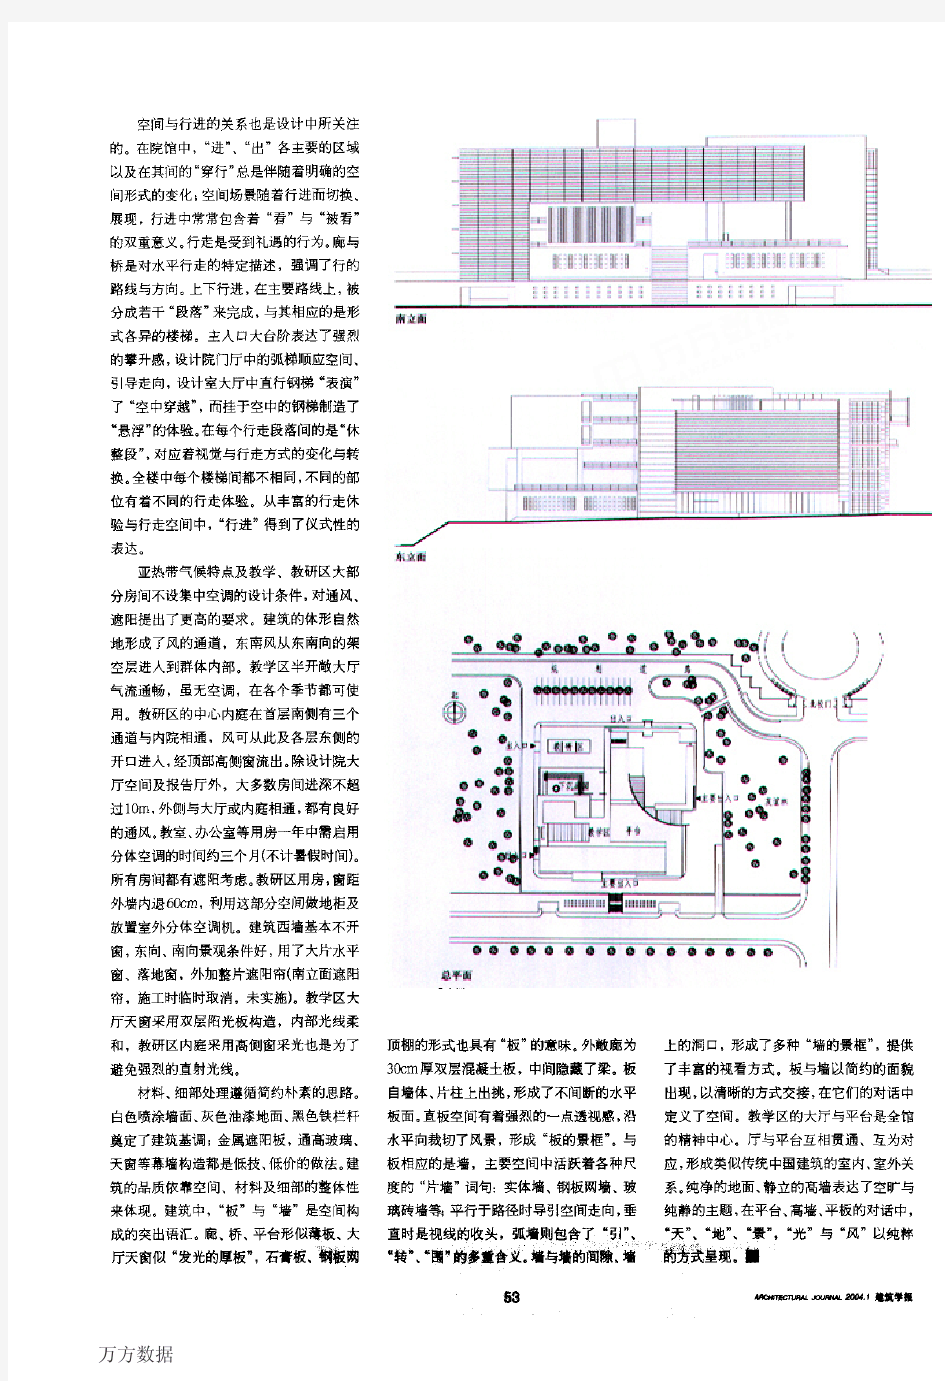 深圳大学建筑与土木学院系馆设计